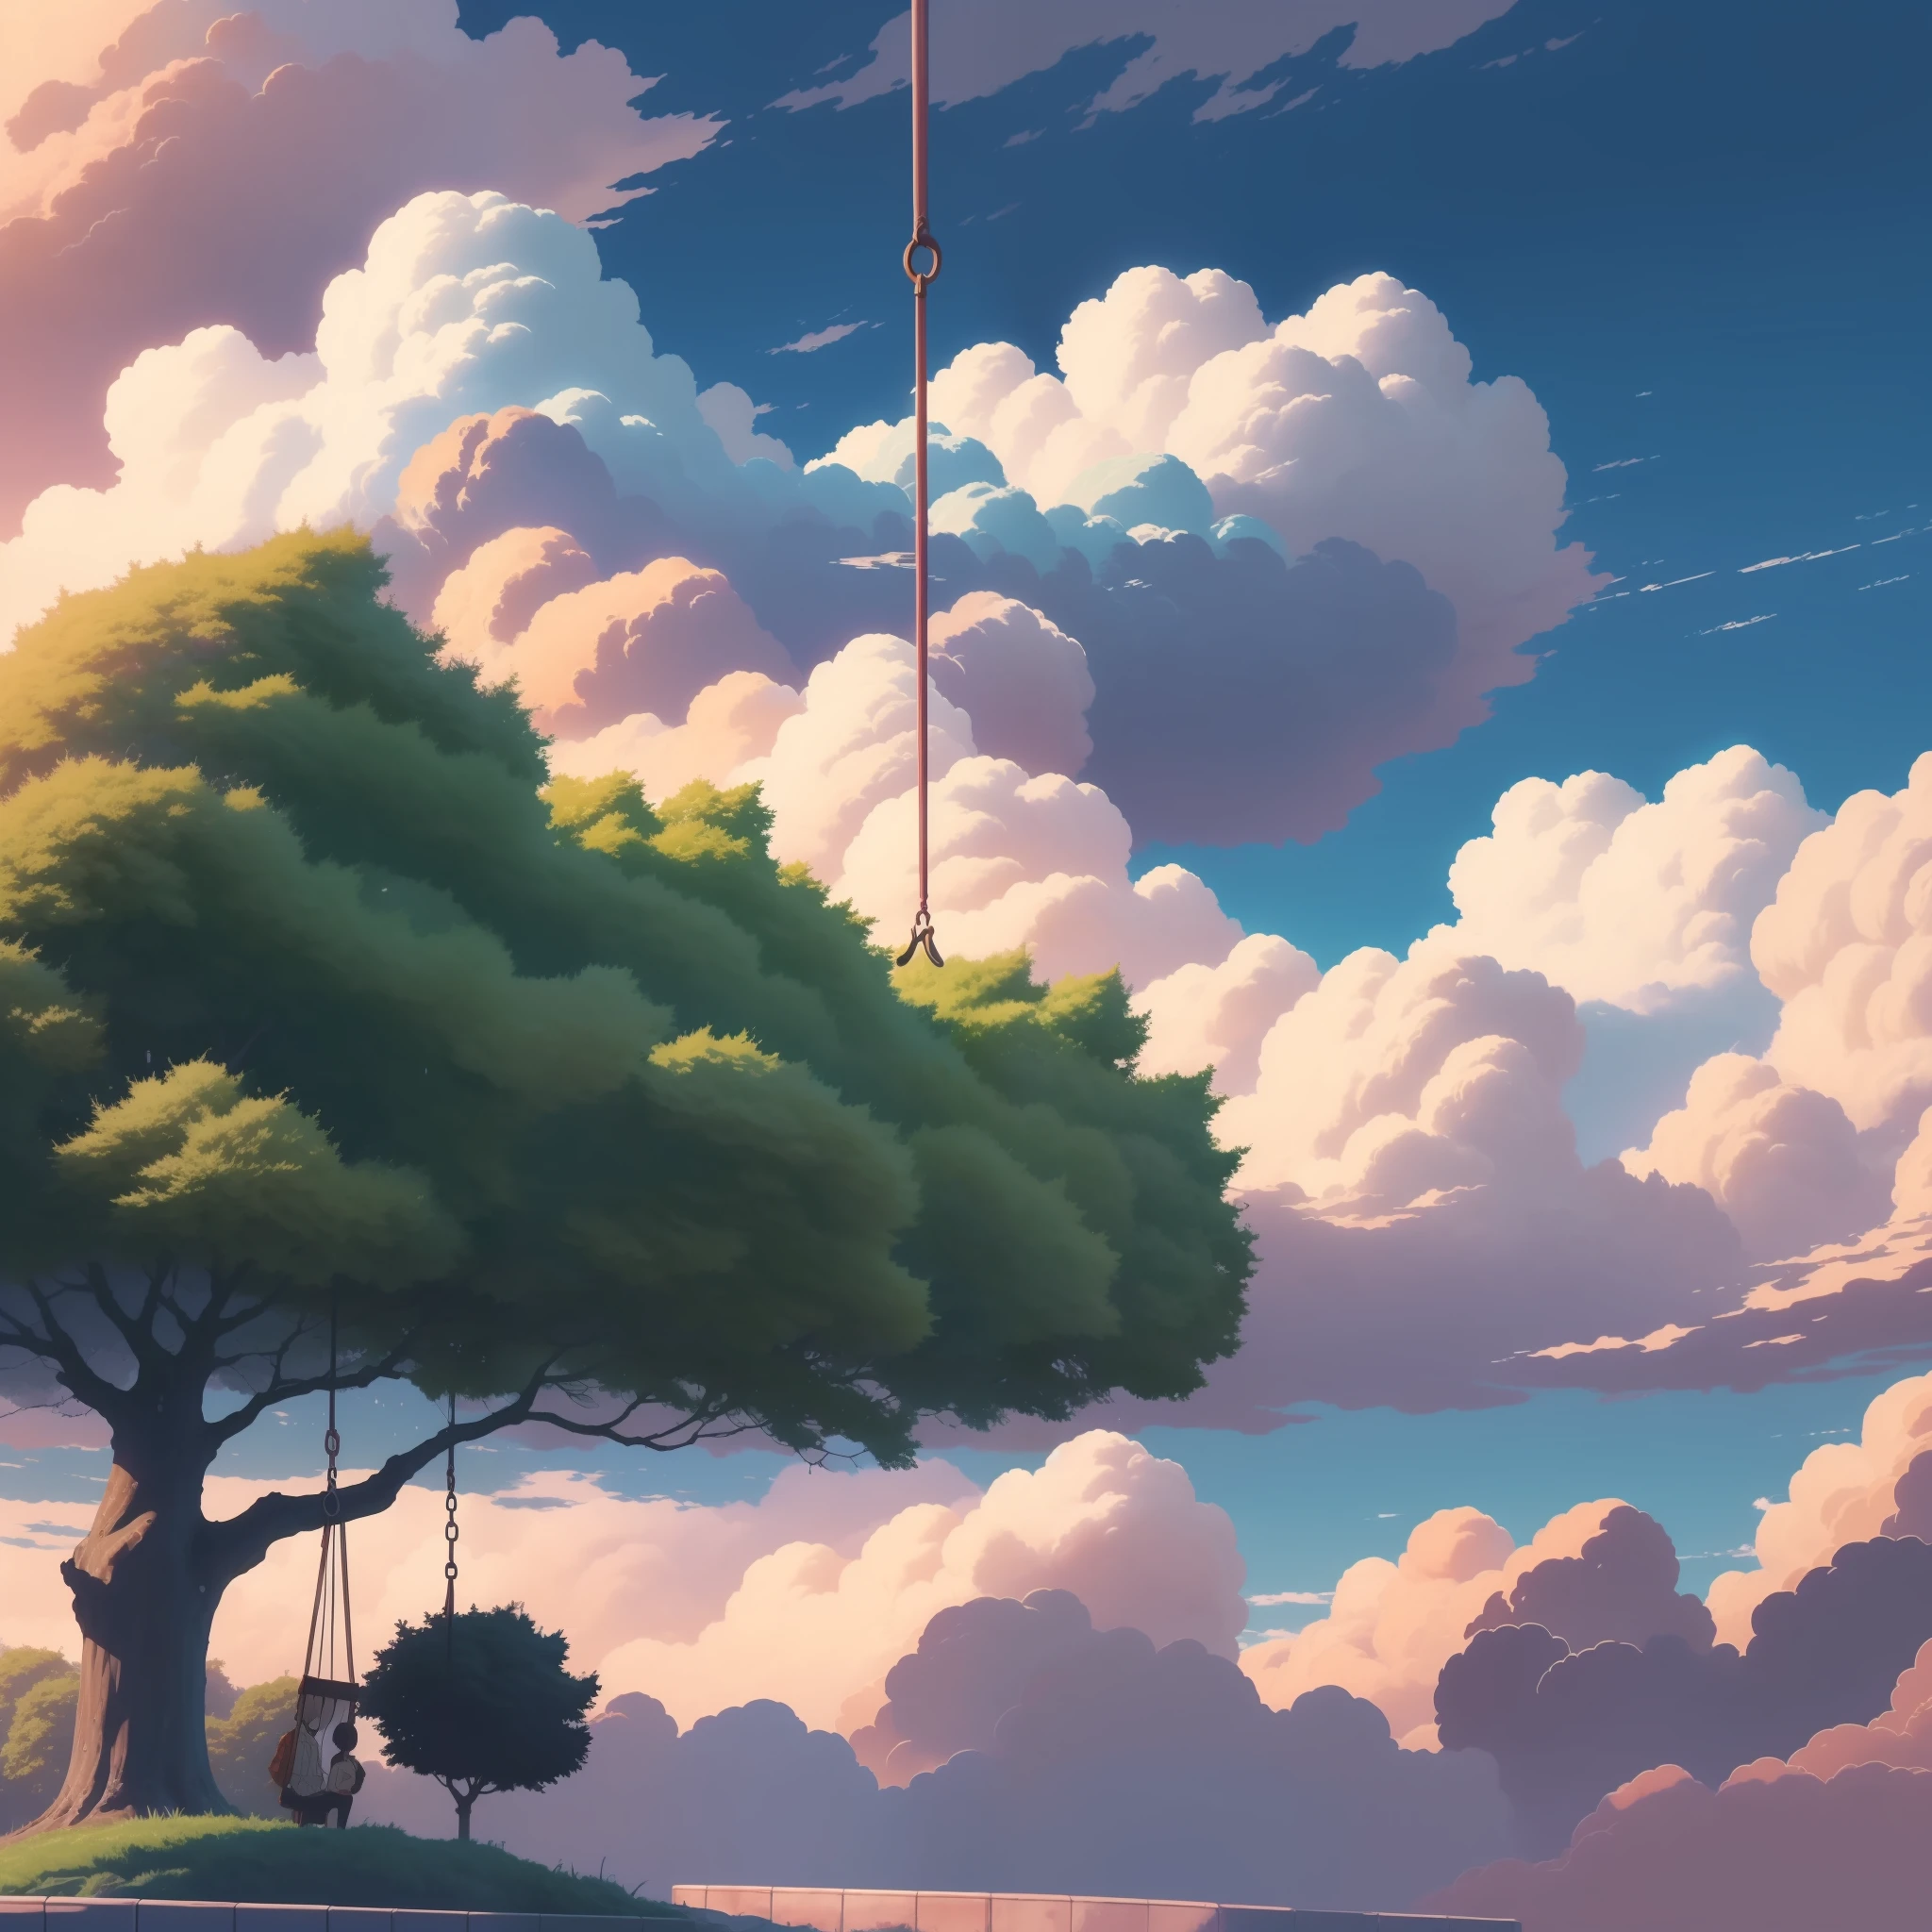 壁纸，风景，最好的品质，蓝天白云，那个树，摇摆，动漫风格，8千，新海诚绘画风格，动漫风景，动漫背景艺术